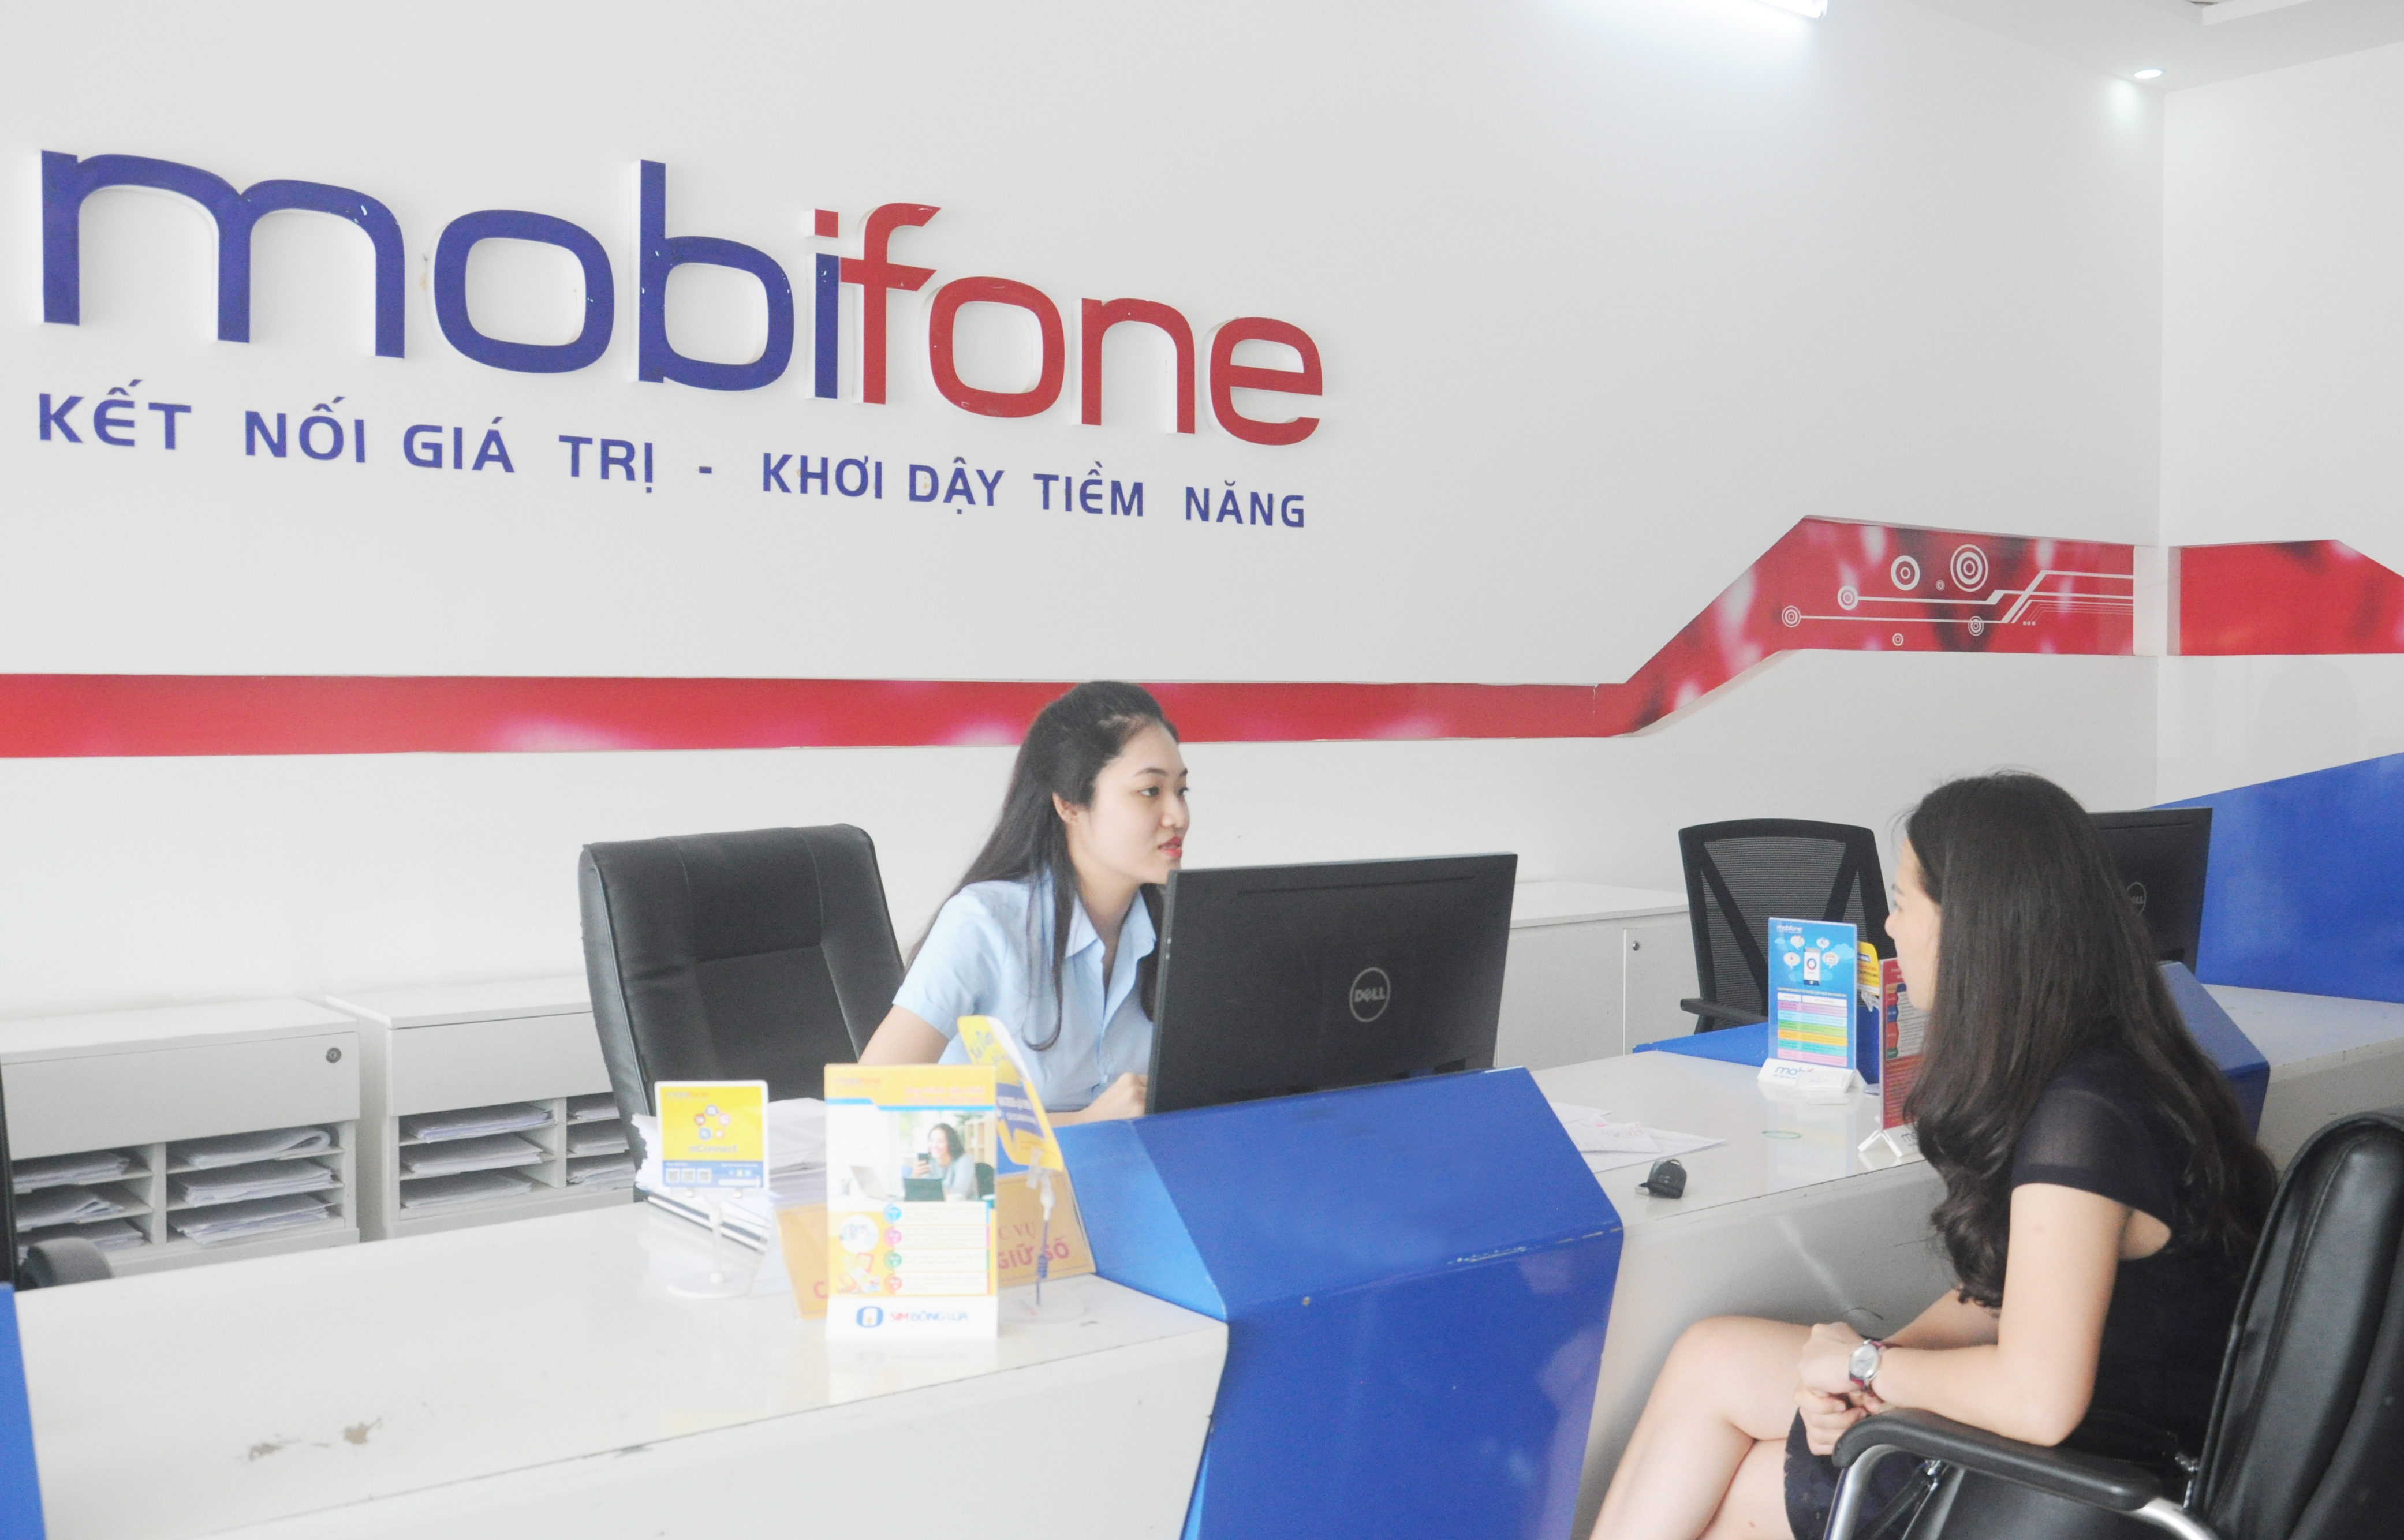 Mobifone Thanh Hóa trao giải chương trình “Nhân 6 DATA – vui Tết THAGA”